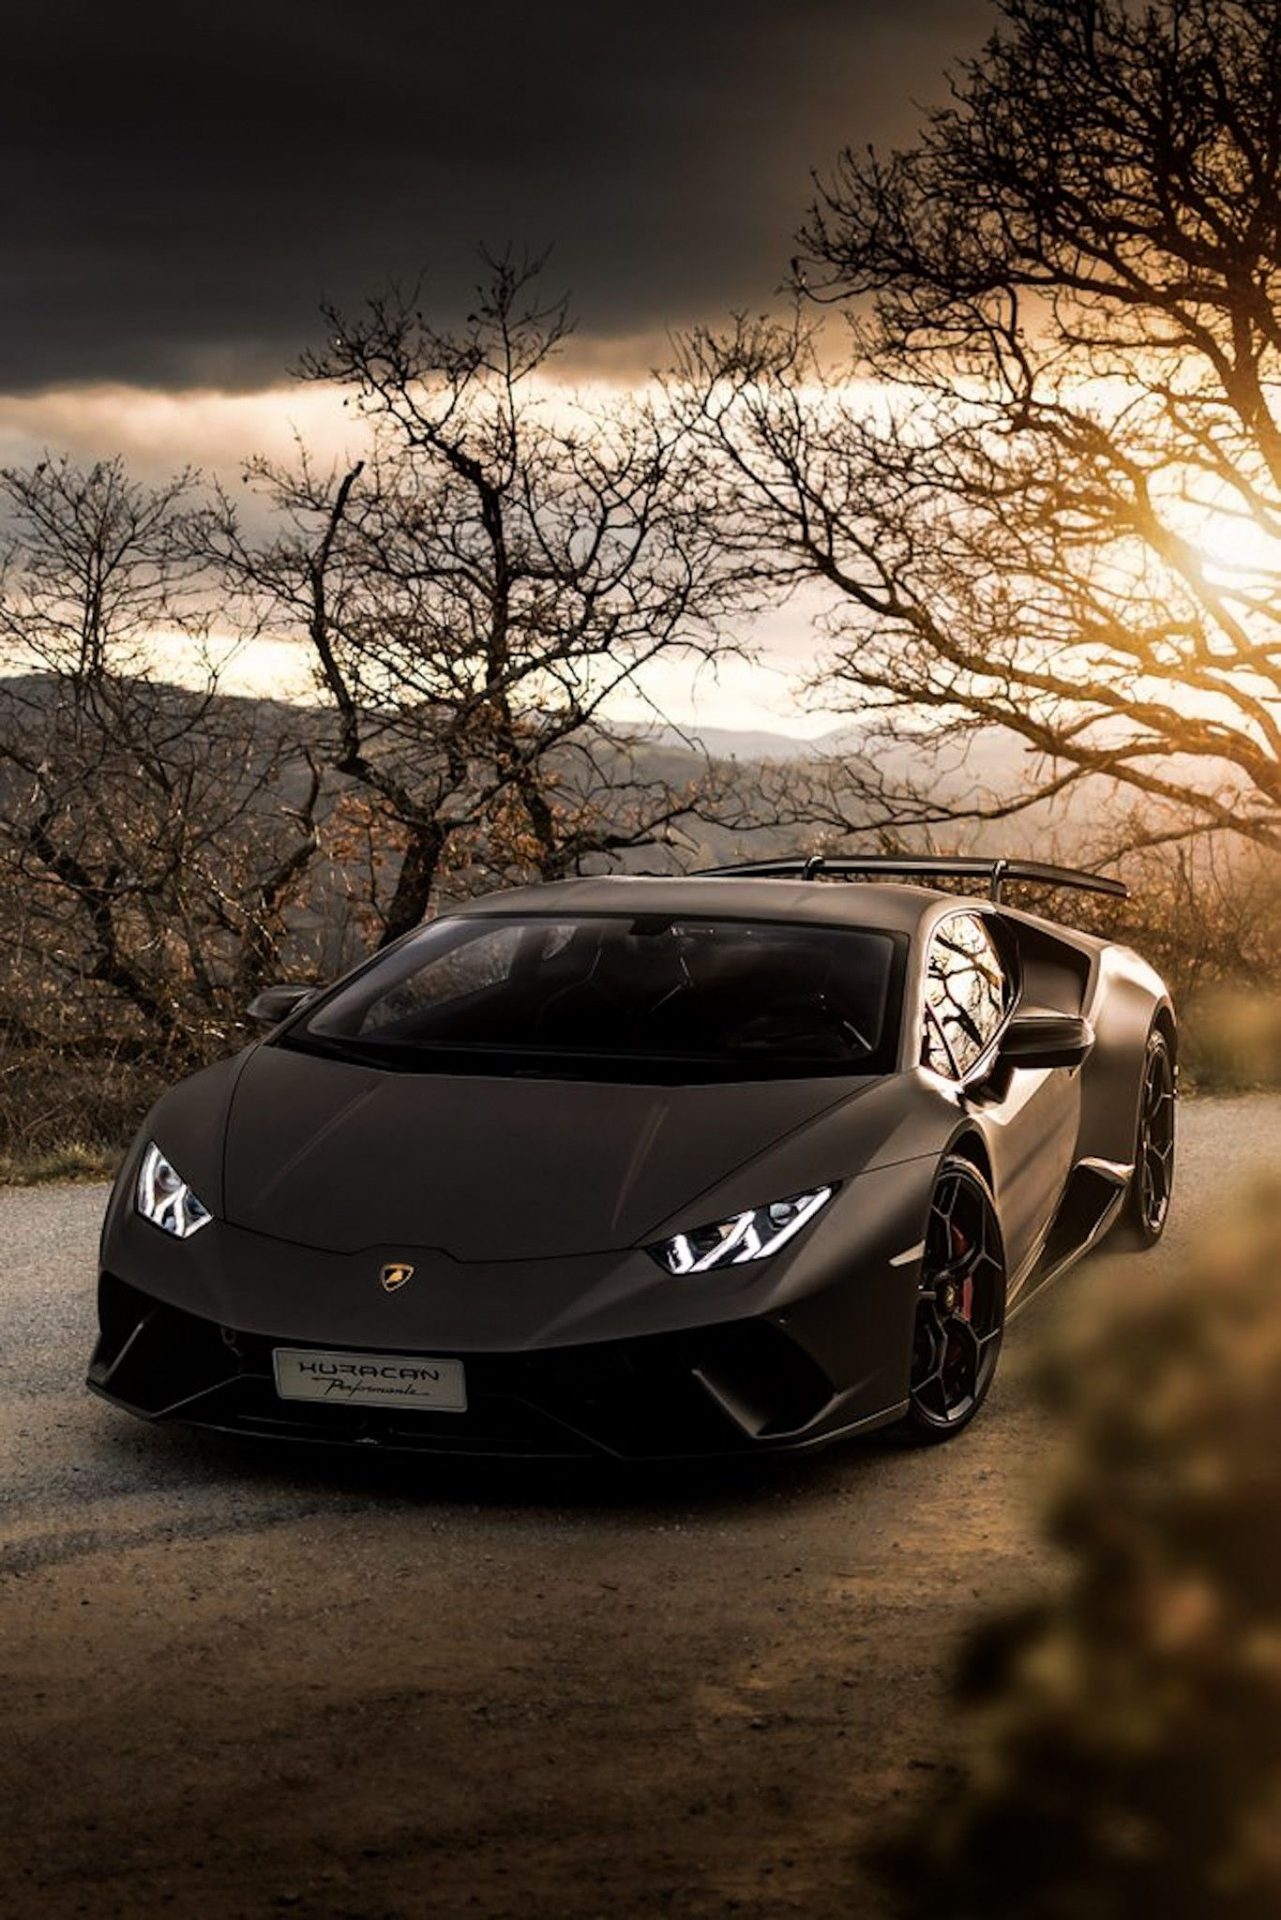 Bộ sưu tập hình nền bò mộng Lamborghini Aventador  Báo Dân trí